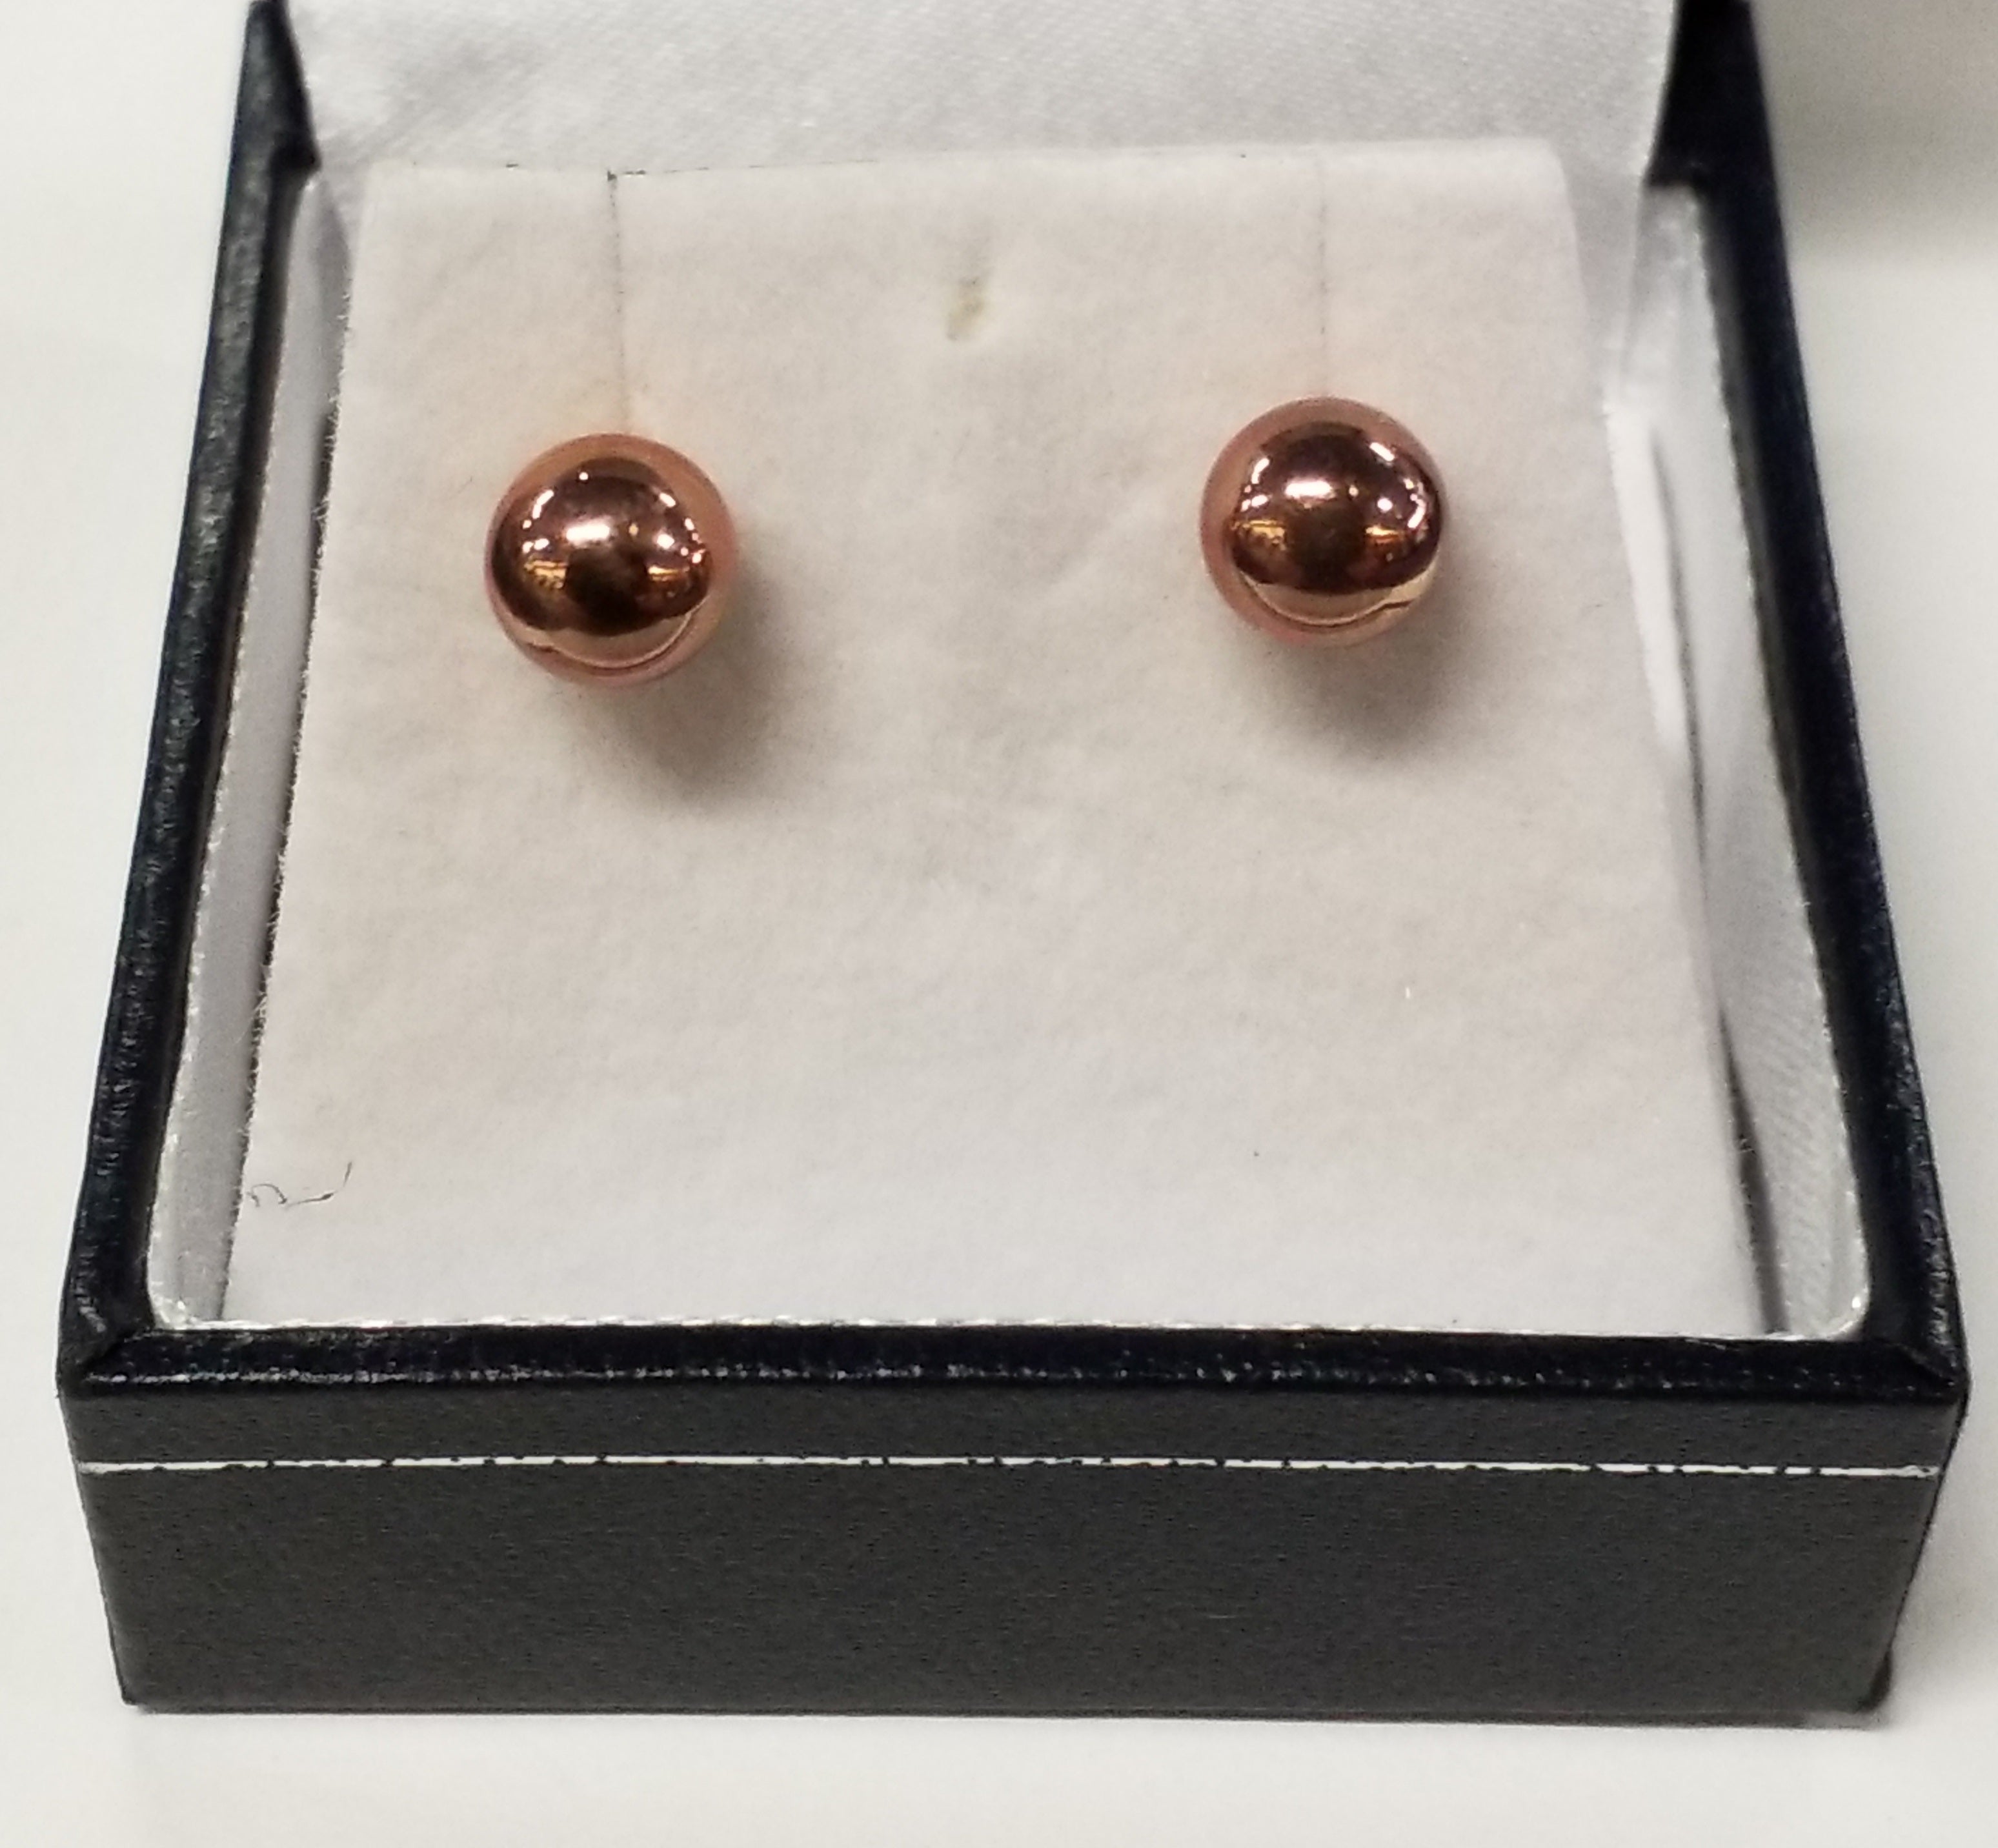 Gold Ball Stud Earrings 4mm - Rose Gold